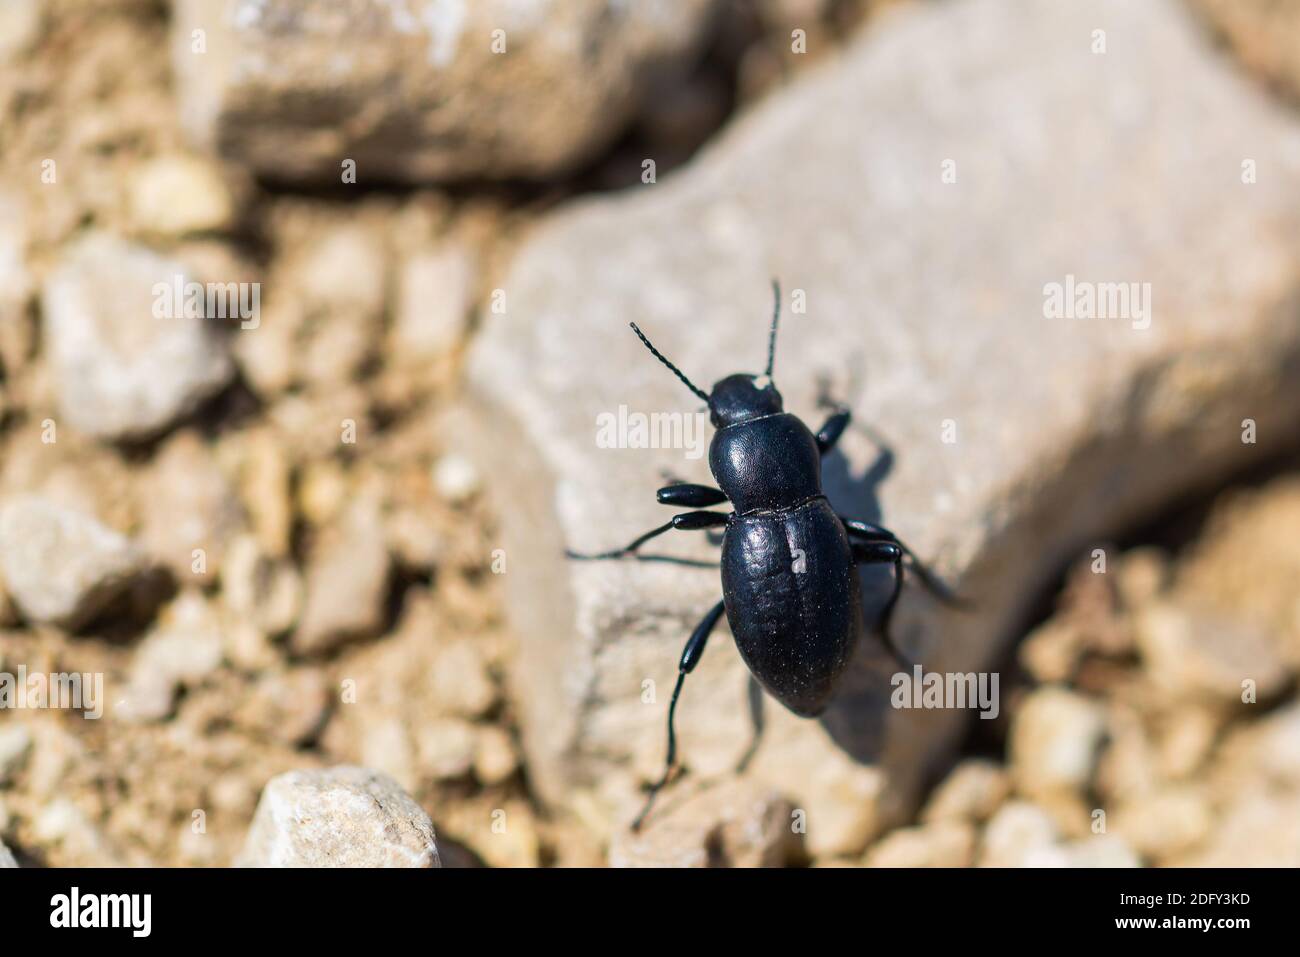 Desert Stink Beetle or Eleodes Armata on a stone. Stock Photo